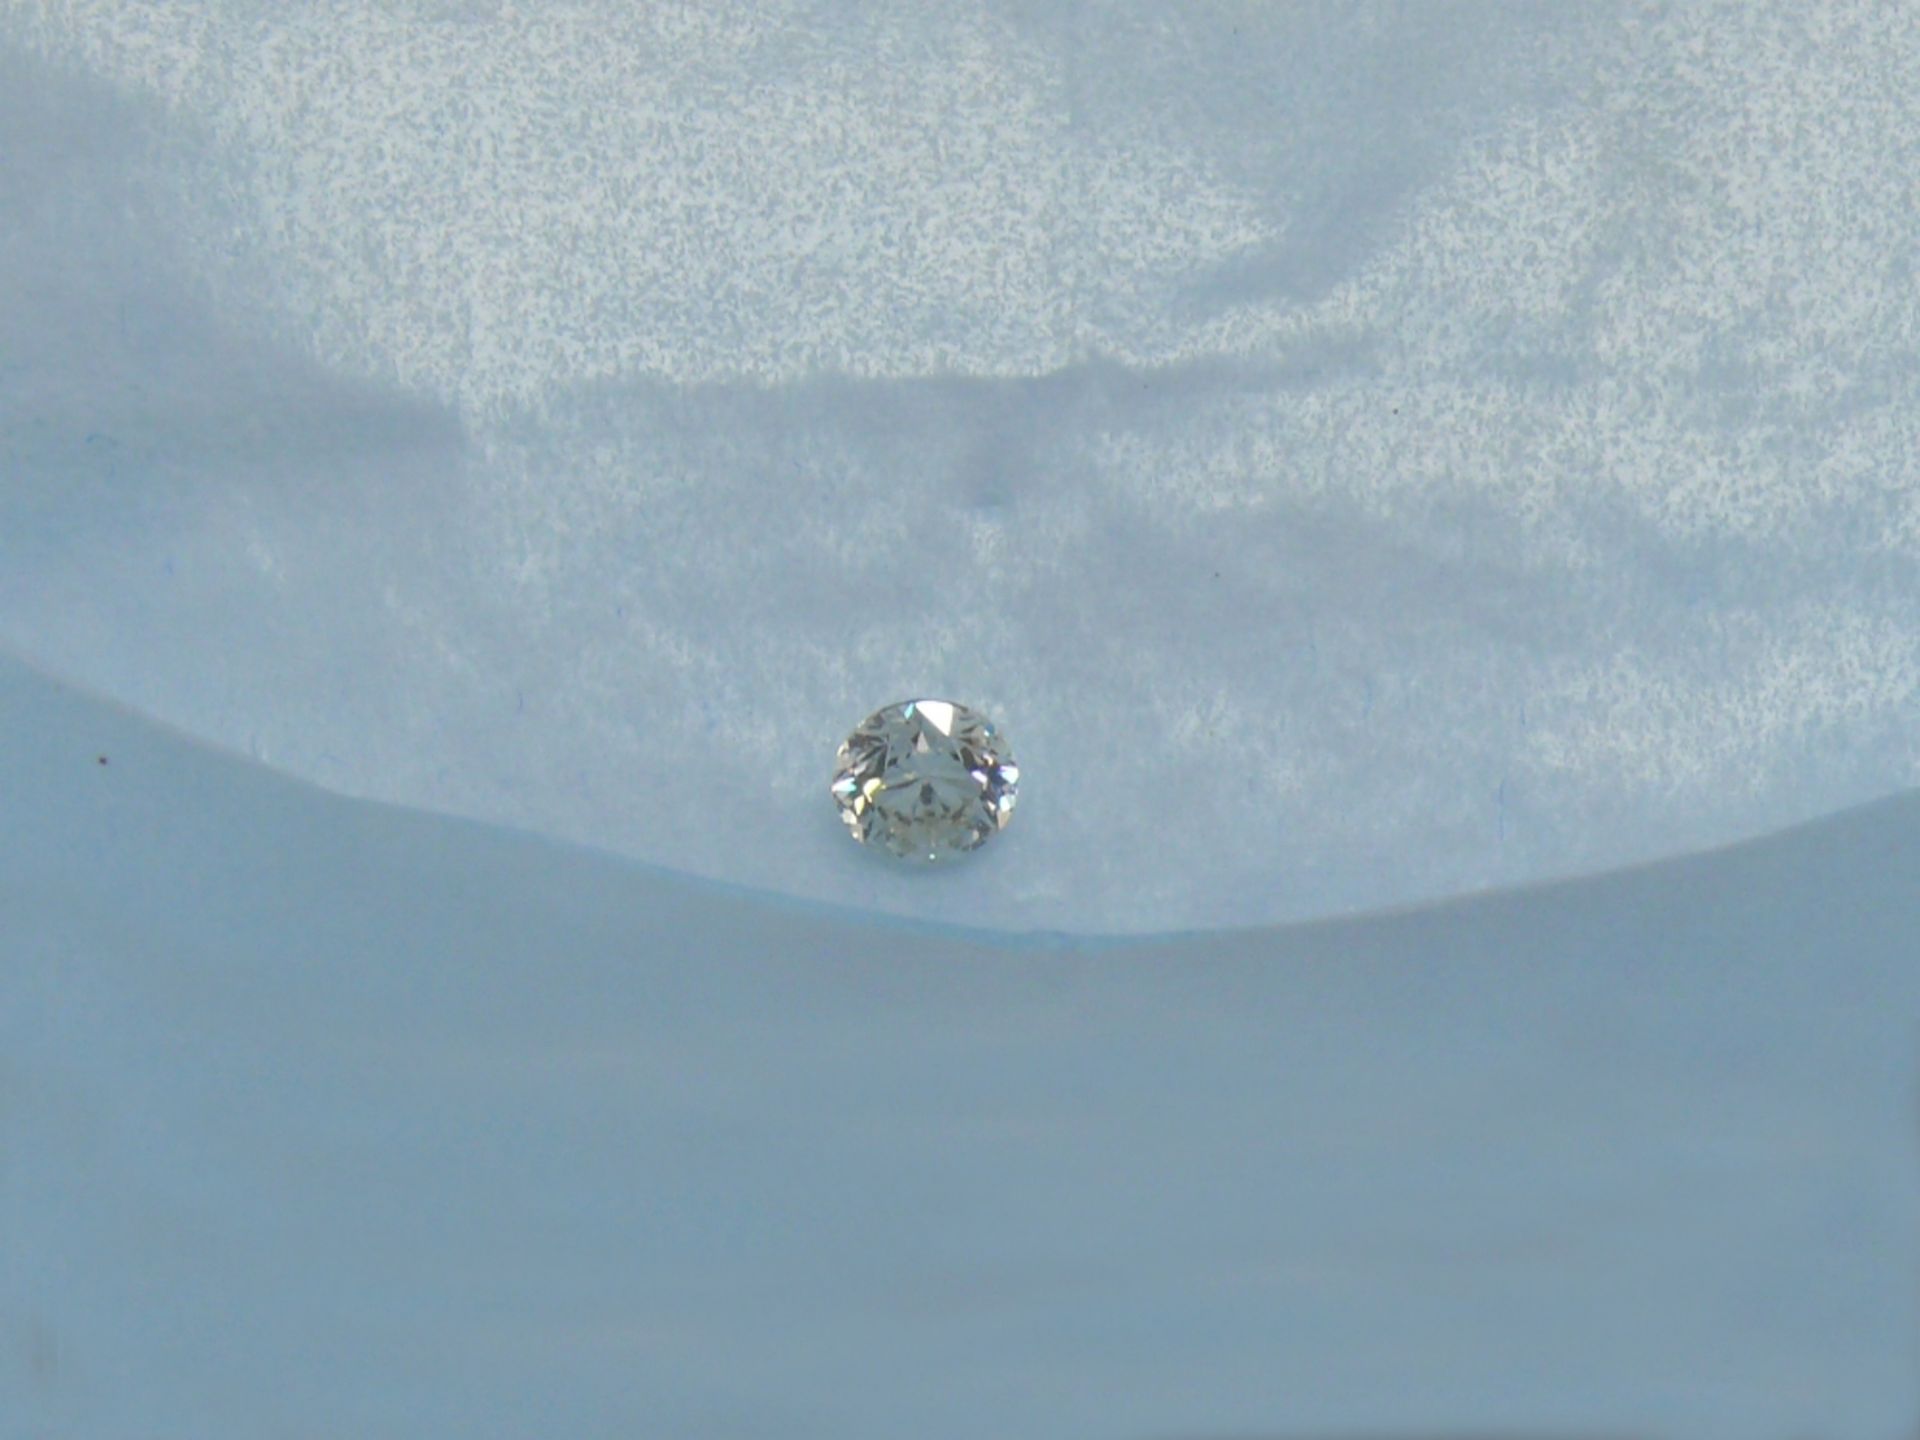 UNMOUNTED DIAMOND Talla brillante (0,52 ct. aprox.). Con certificado gemológico de EGL (European